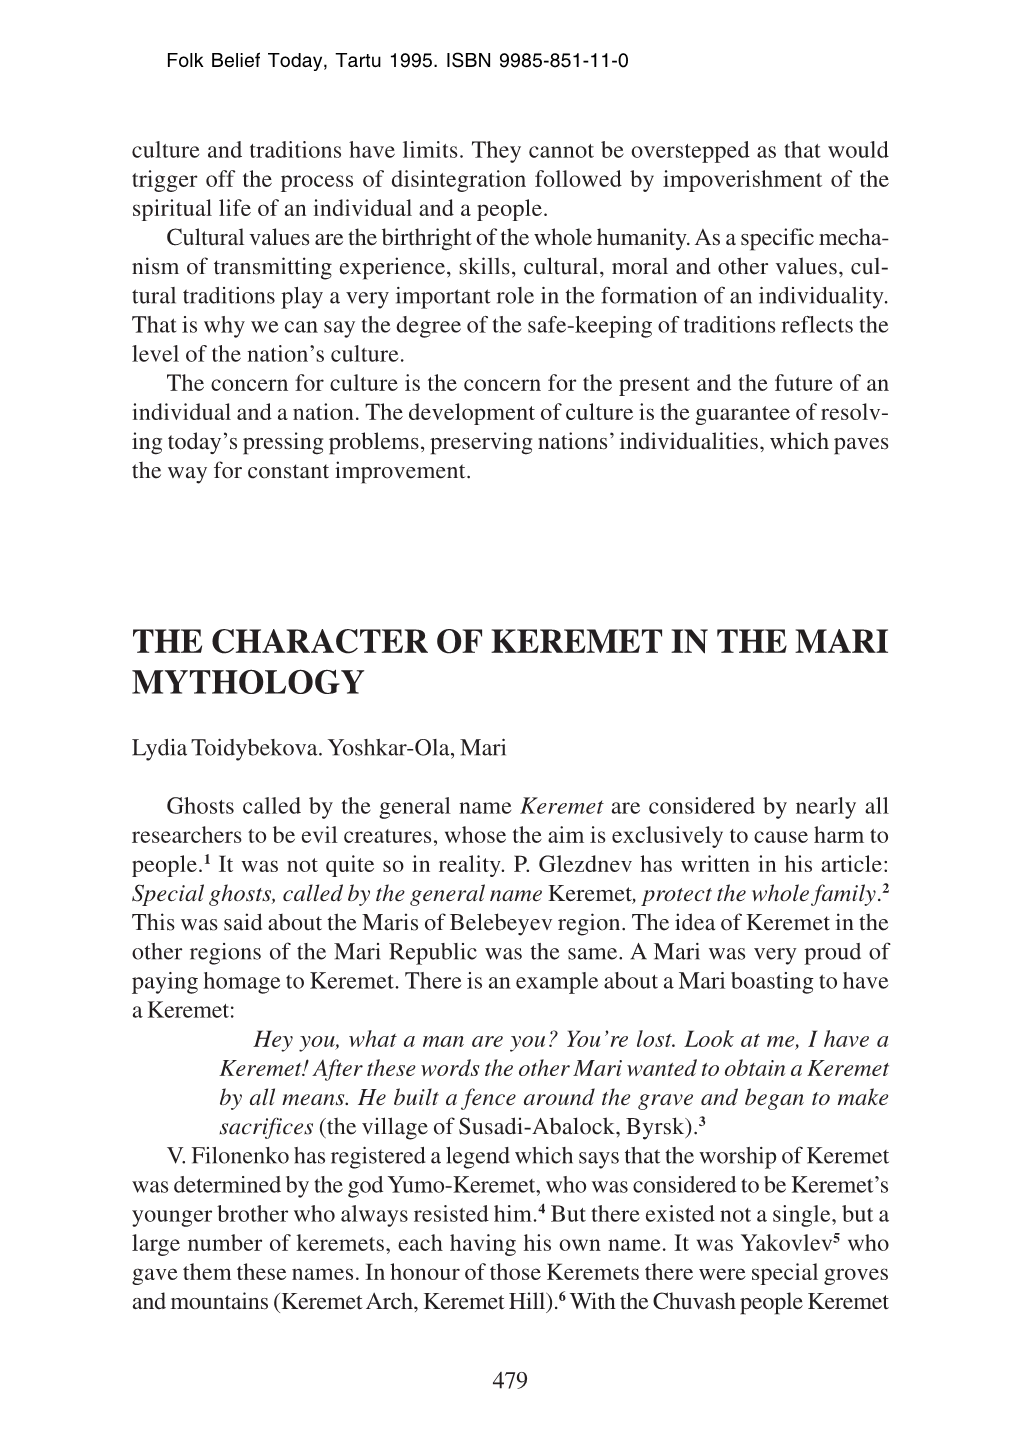 Lydia Toidybekova the Character of Keremet in the Mari Mythology